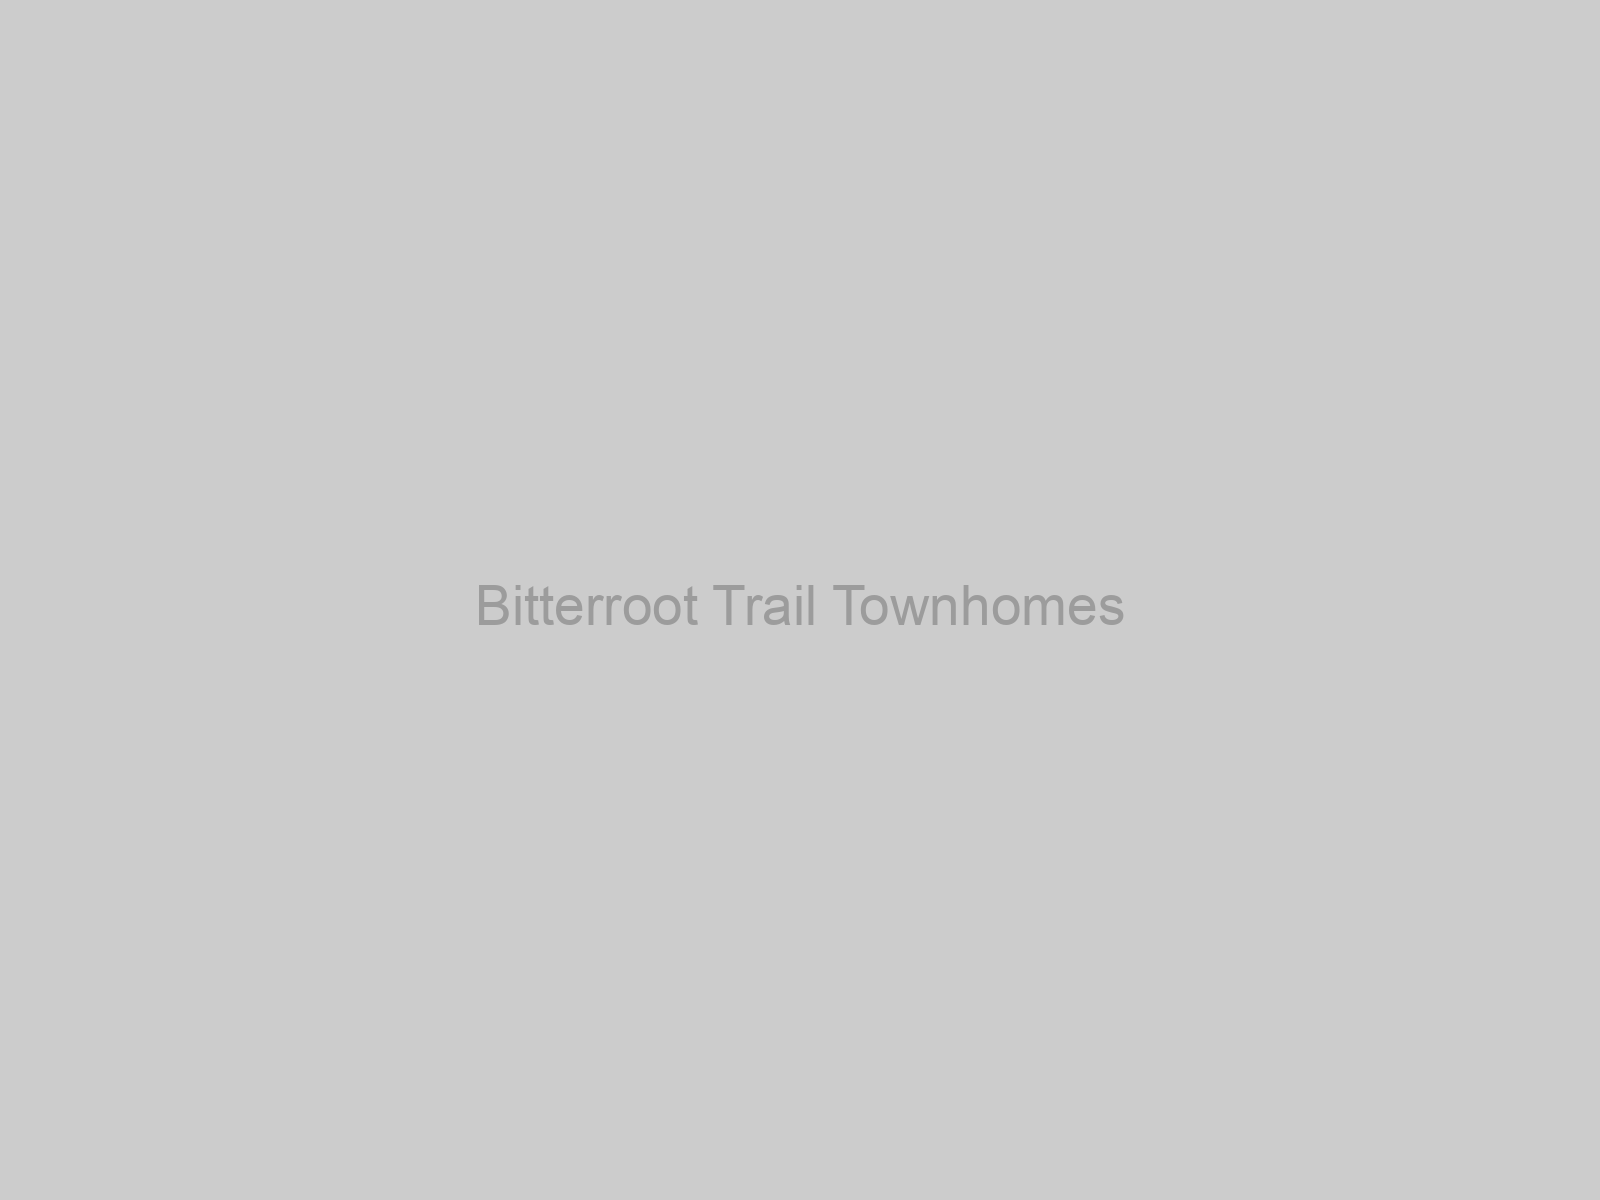 Bitterroot Trail Townhomes